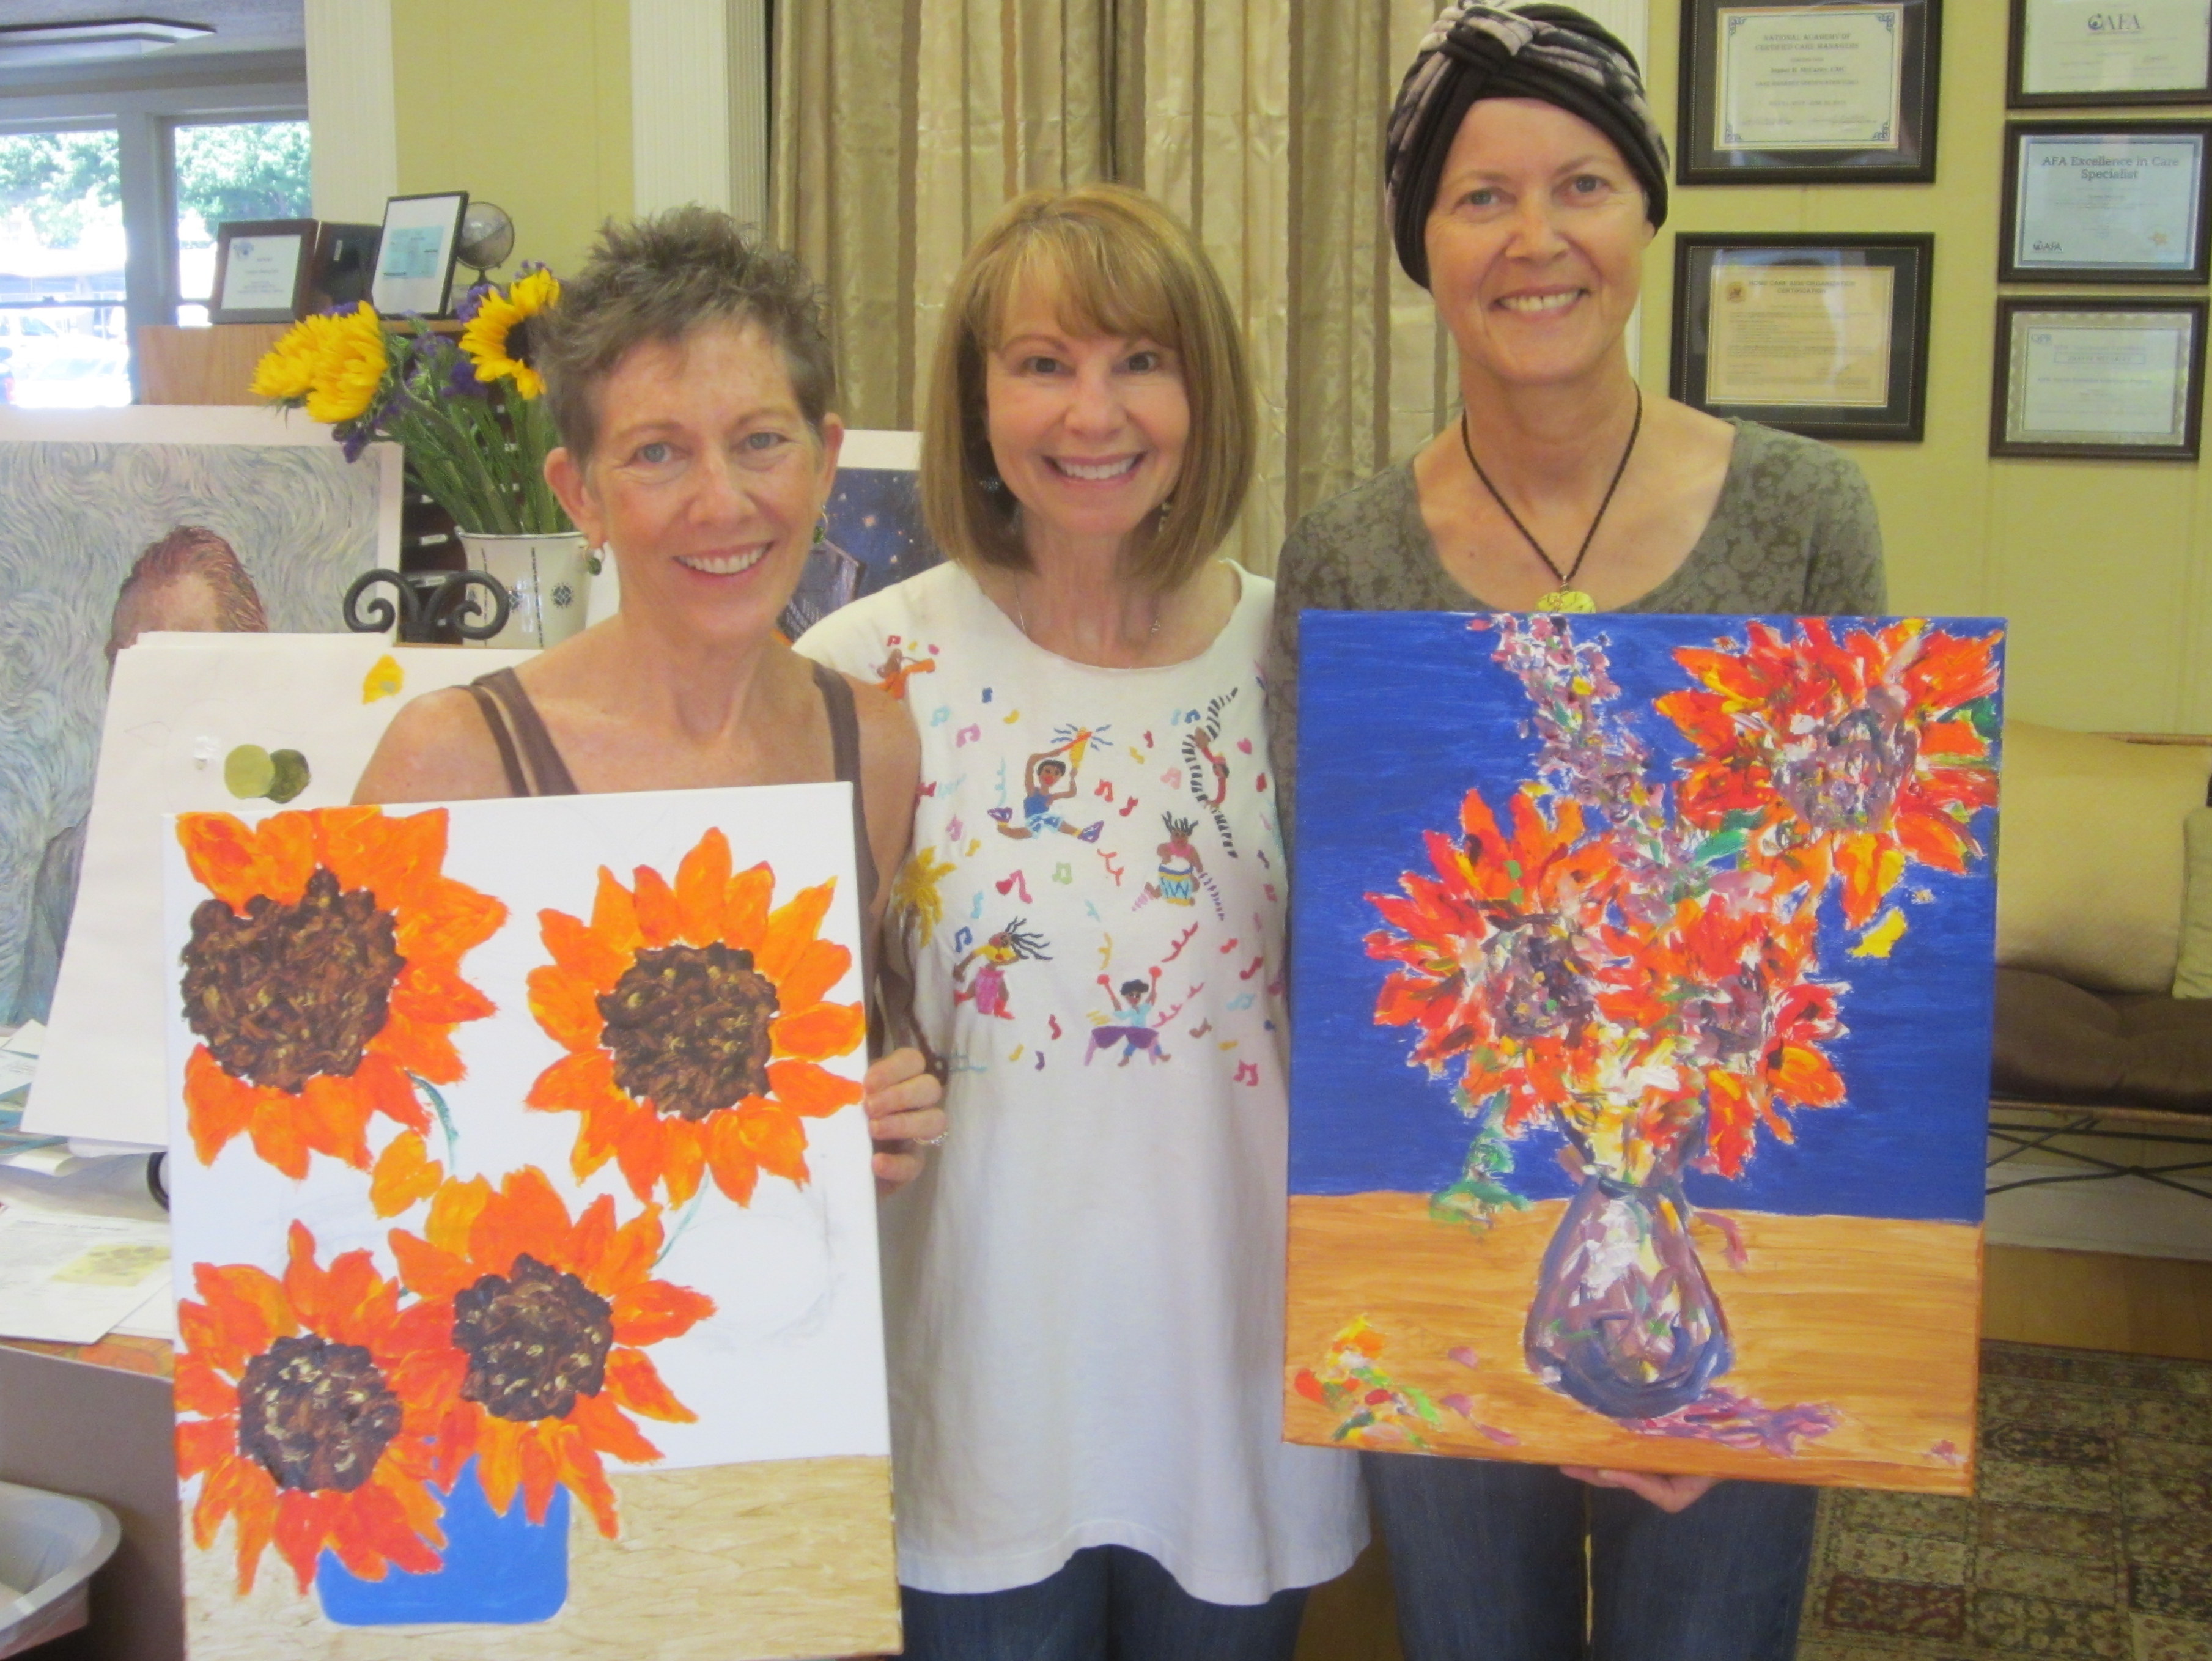 Francie, Debbie, Gayle & Sunflowers!